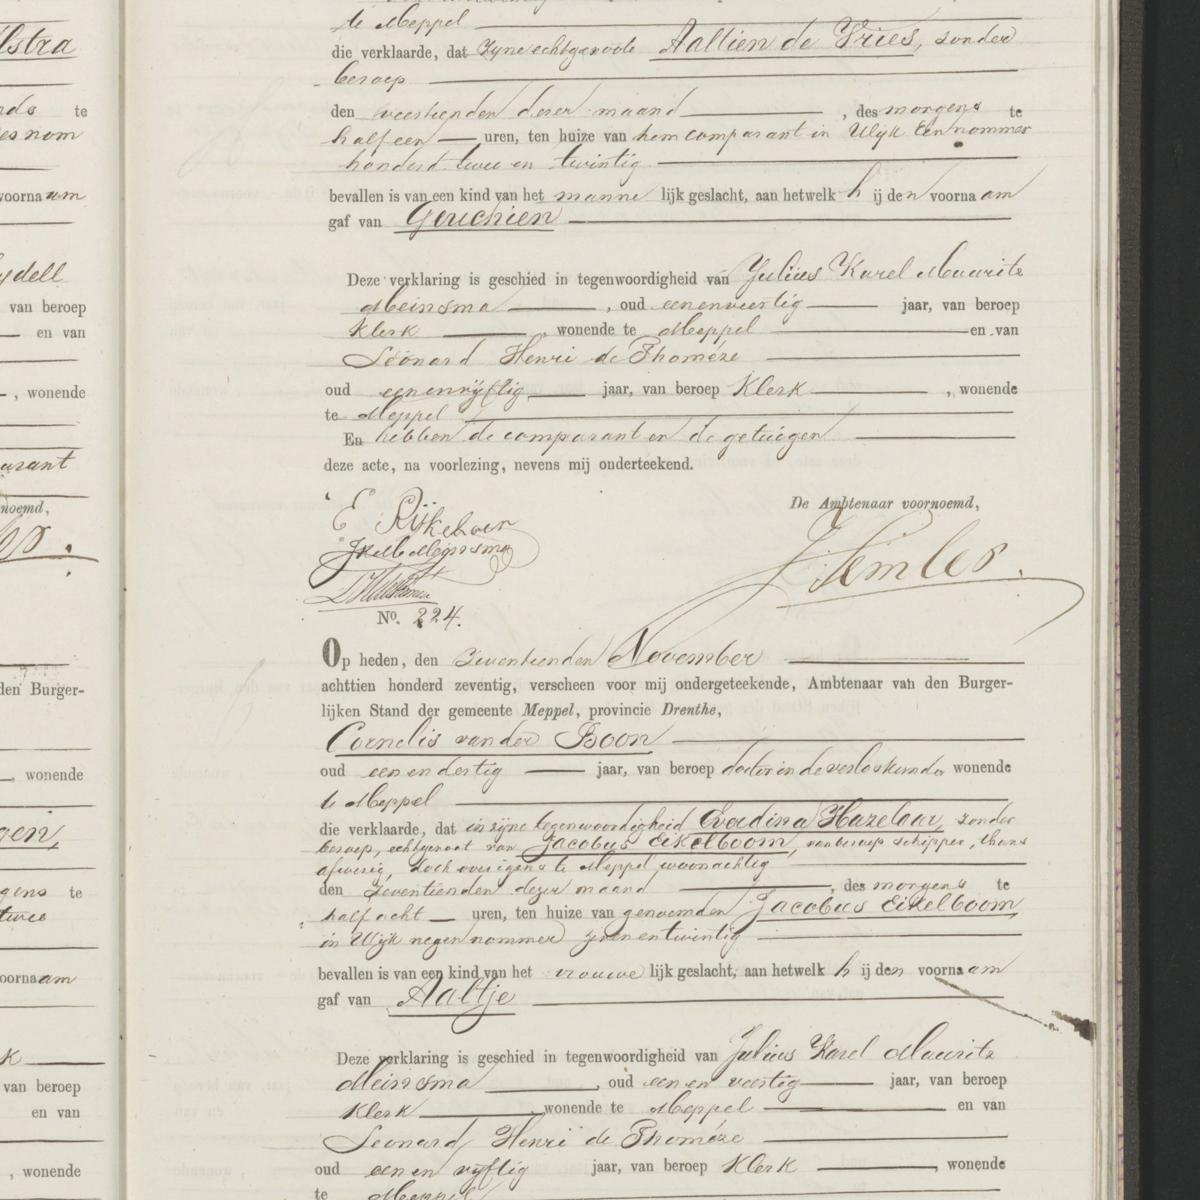 Civil registry of births, Meppel, November 17, 1870, records 223-224